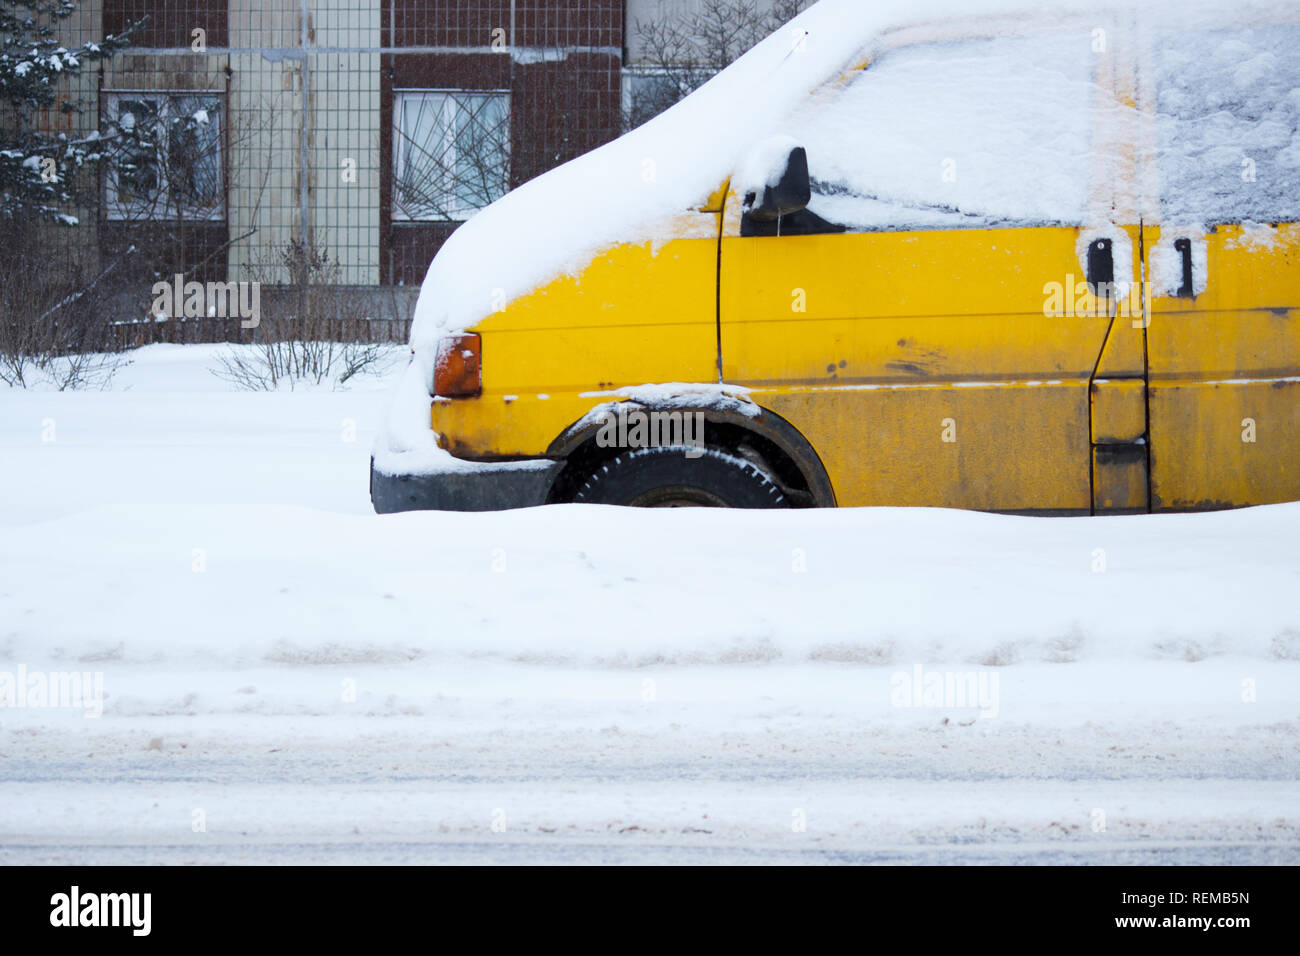 Problem nach Schneefall - Schnee auf der City Road, Schnee Brei. Gelbe Auto  mit Rädern mit Schnee bedeckt. Problem für schneeräumgeräte. Gatschina,  Russland Stockfotografie - Alamy